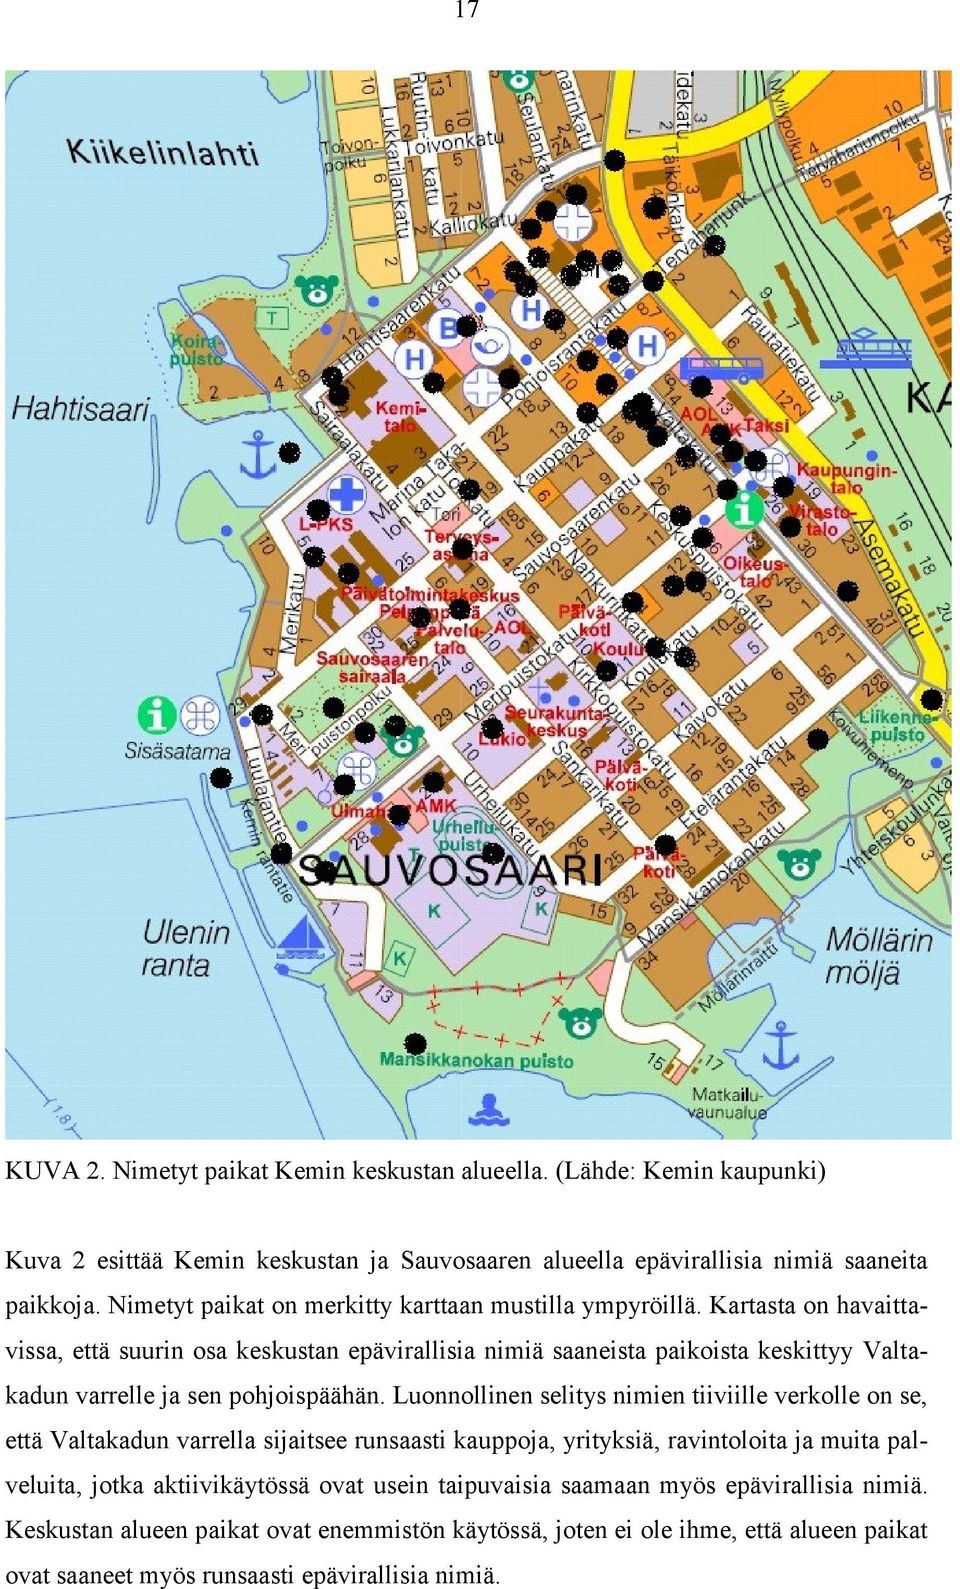 Kartasta on havaittavissa, että suurin osa keskustan epävirallisia nimiä saaneista paikoista keskittyy Valtakadun varrelle ja sen pohjoispäähän.